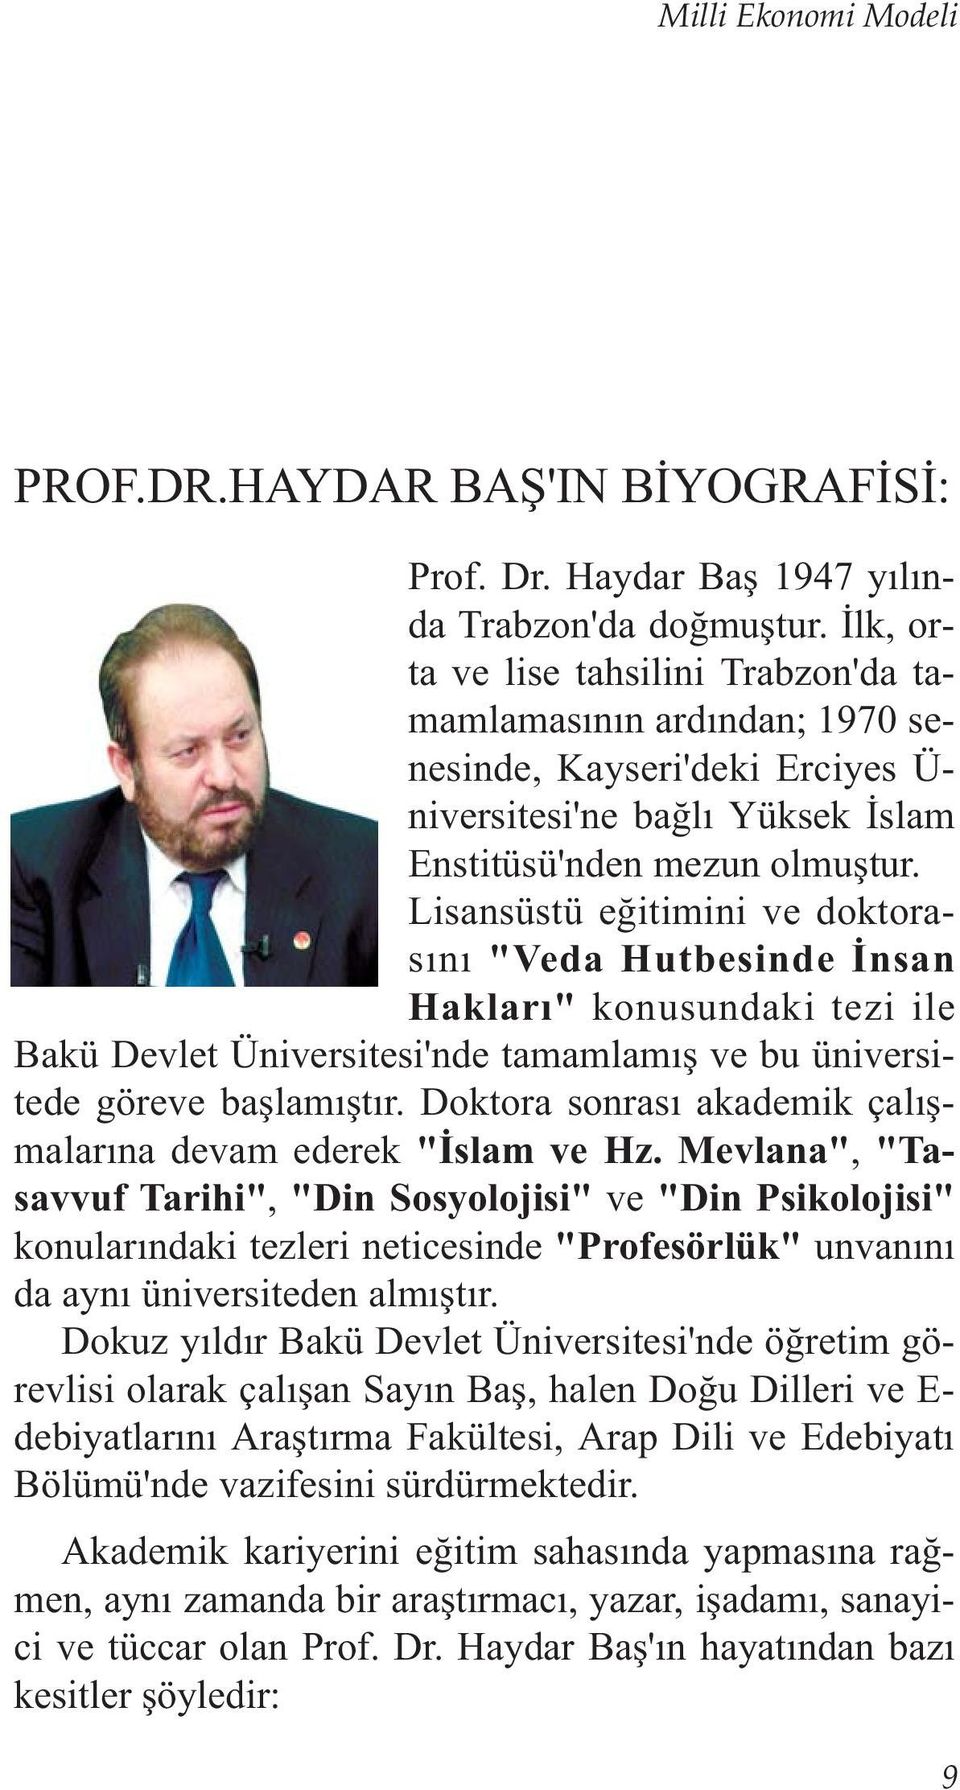 Lisansüstü eðitimini ve doktorasýný "Veda Hutbesinde Ýnsan Haklarý" konusundaki tezi ile Bakü Devlet Üniversitesi'nde tamamlamýþ ve bu üniversitede göreve baþlamýþtýr.